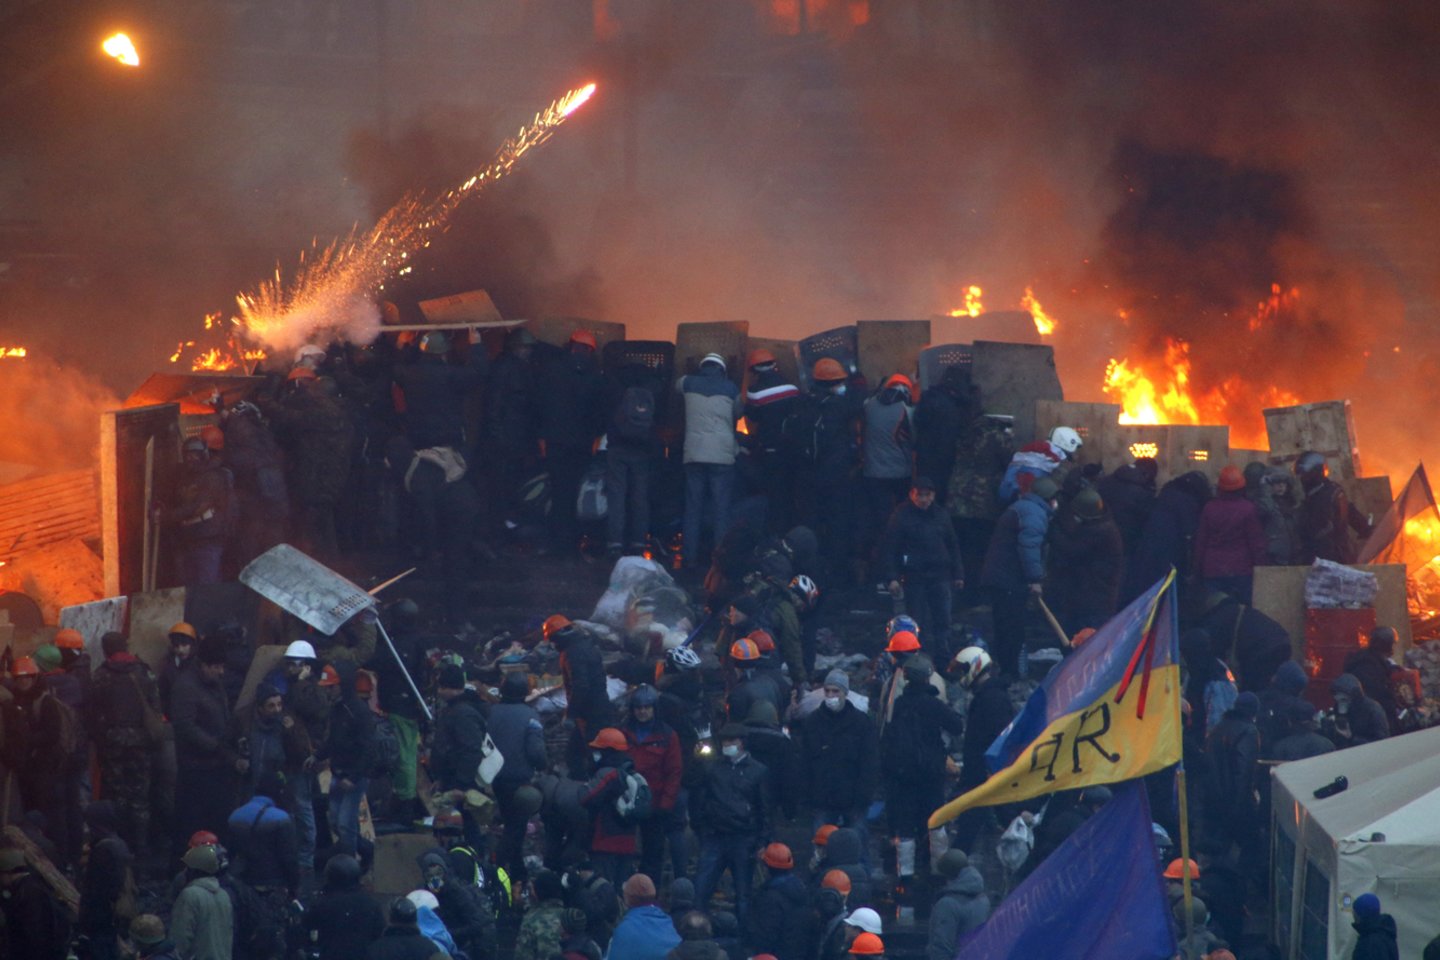  2014 m. Kijeve kilo proeuropietiška revoliucija, kuri pareikalavo mažiausiai 82 žmonių gyvybių. Buvo nuverstas prezidentas Viktoras Janukovyčius, tačiau Rusija aneksavo Krymą, o prorusiški separatistai pradėjo karinį konflikt Donbaso regione, kuris nėra išsprestas dar ir šiandien.<br>Reuters/Scanpix nuotr.